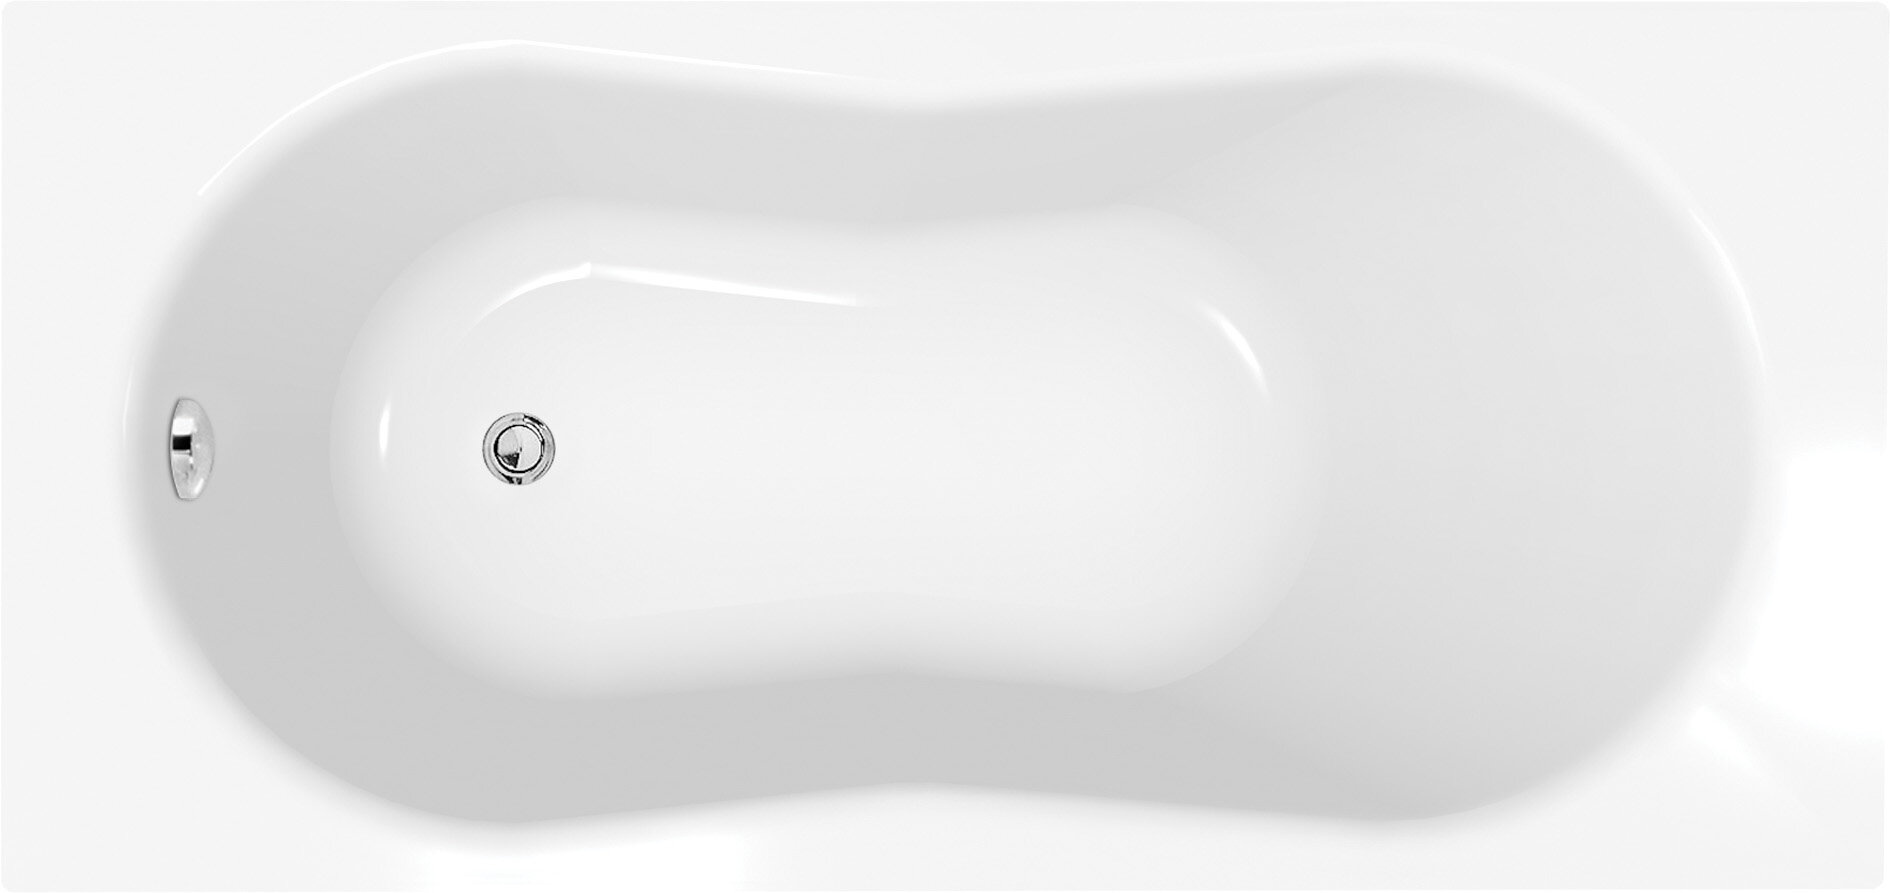 Ванна прямоугольная Cersanit NIKE 100% 170x70 (ультра белая), литьевой акрил 4 мм, глубина 45 см, гарантия 10 лет (поставляется без комплектующих)